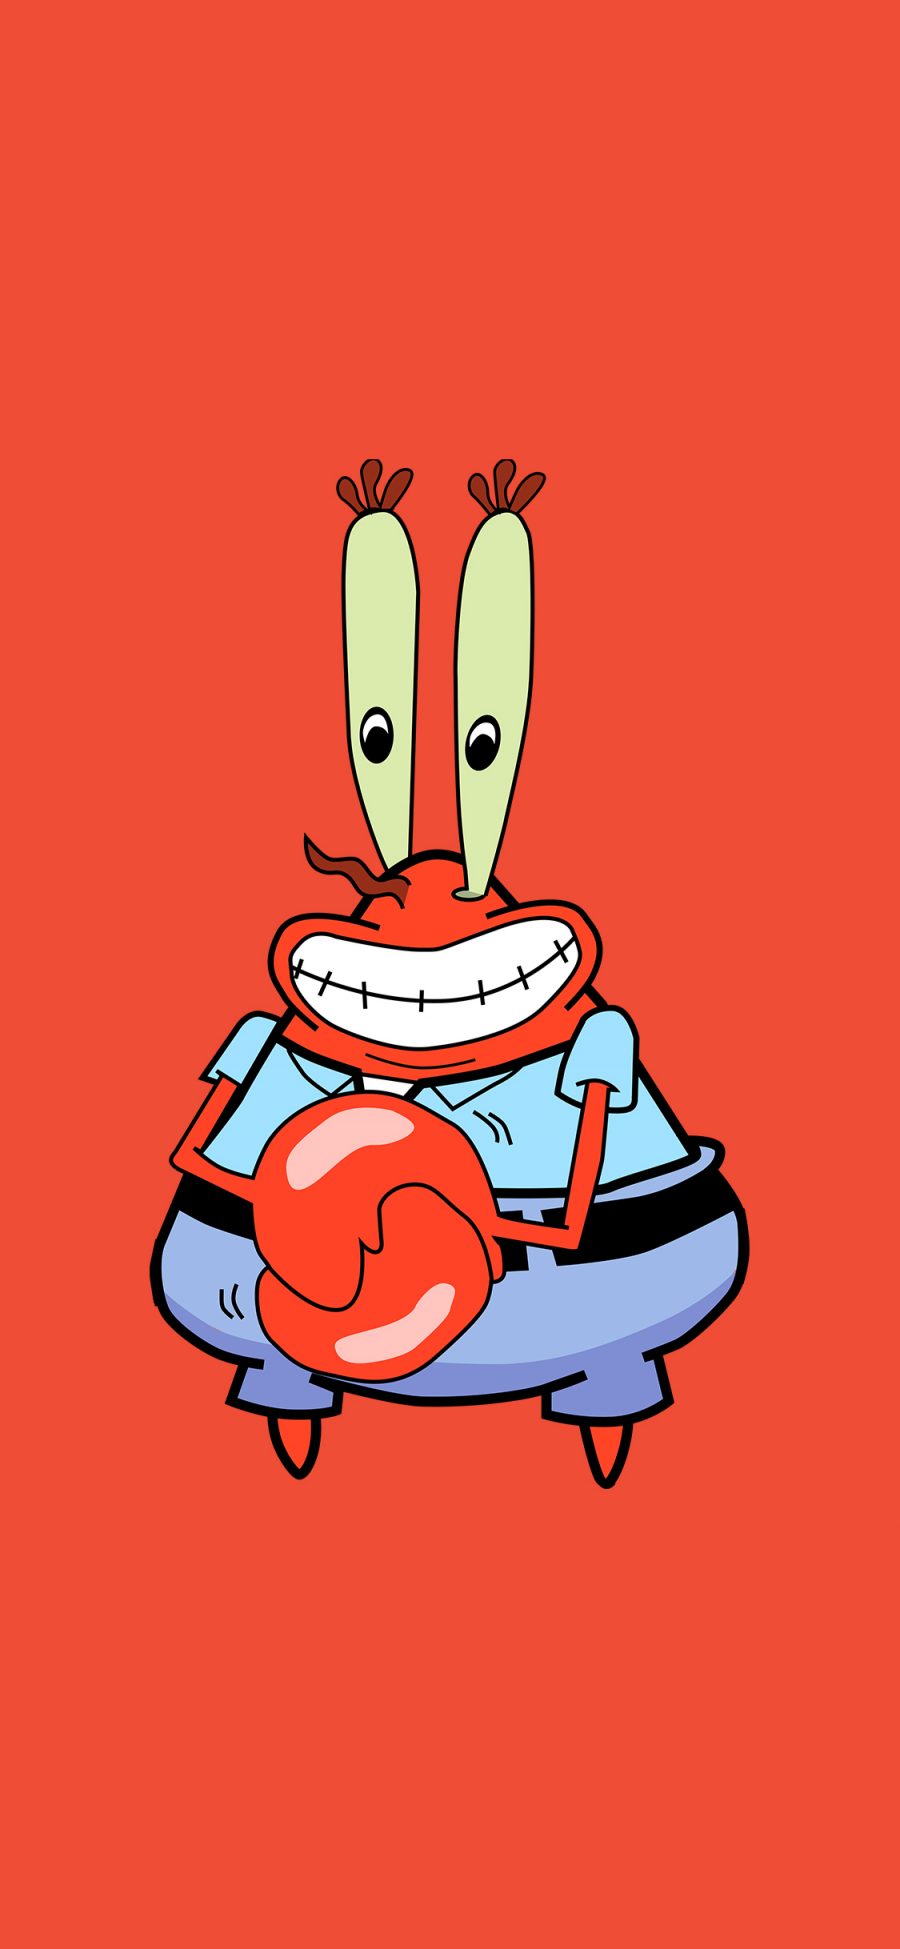 [2436×1125]蟹老板 红色 海绵宝宝 螃蟹 动画 苹果手机动漫壁纸图片